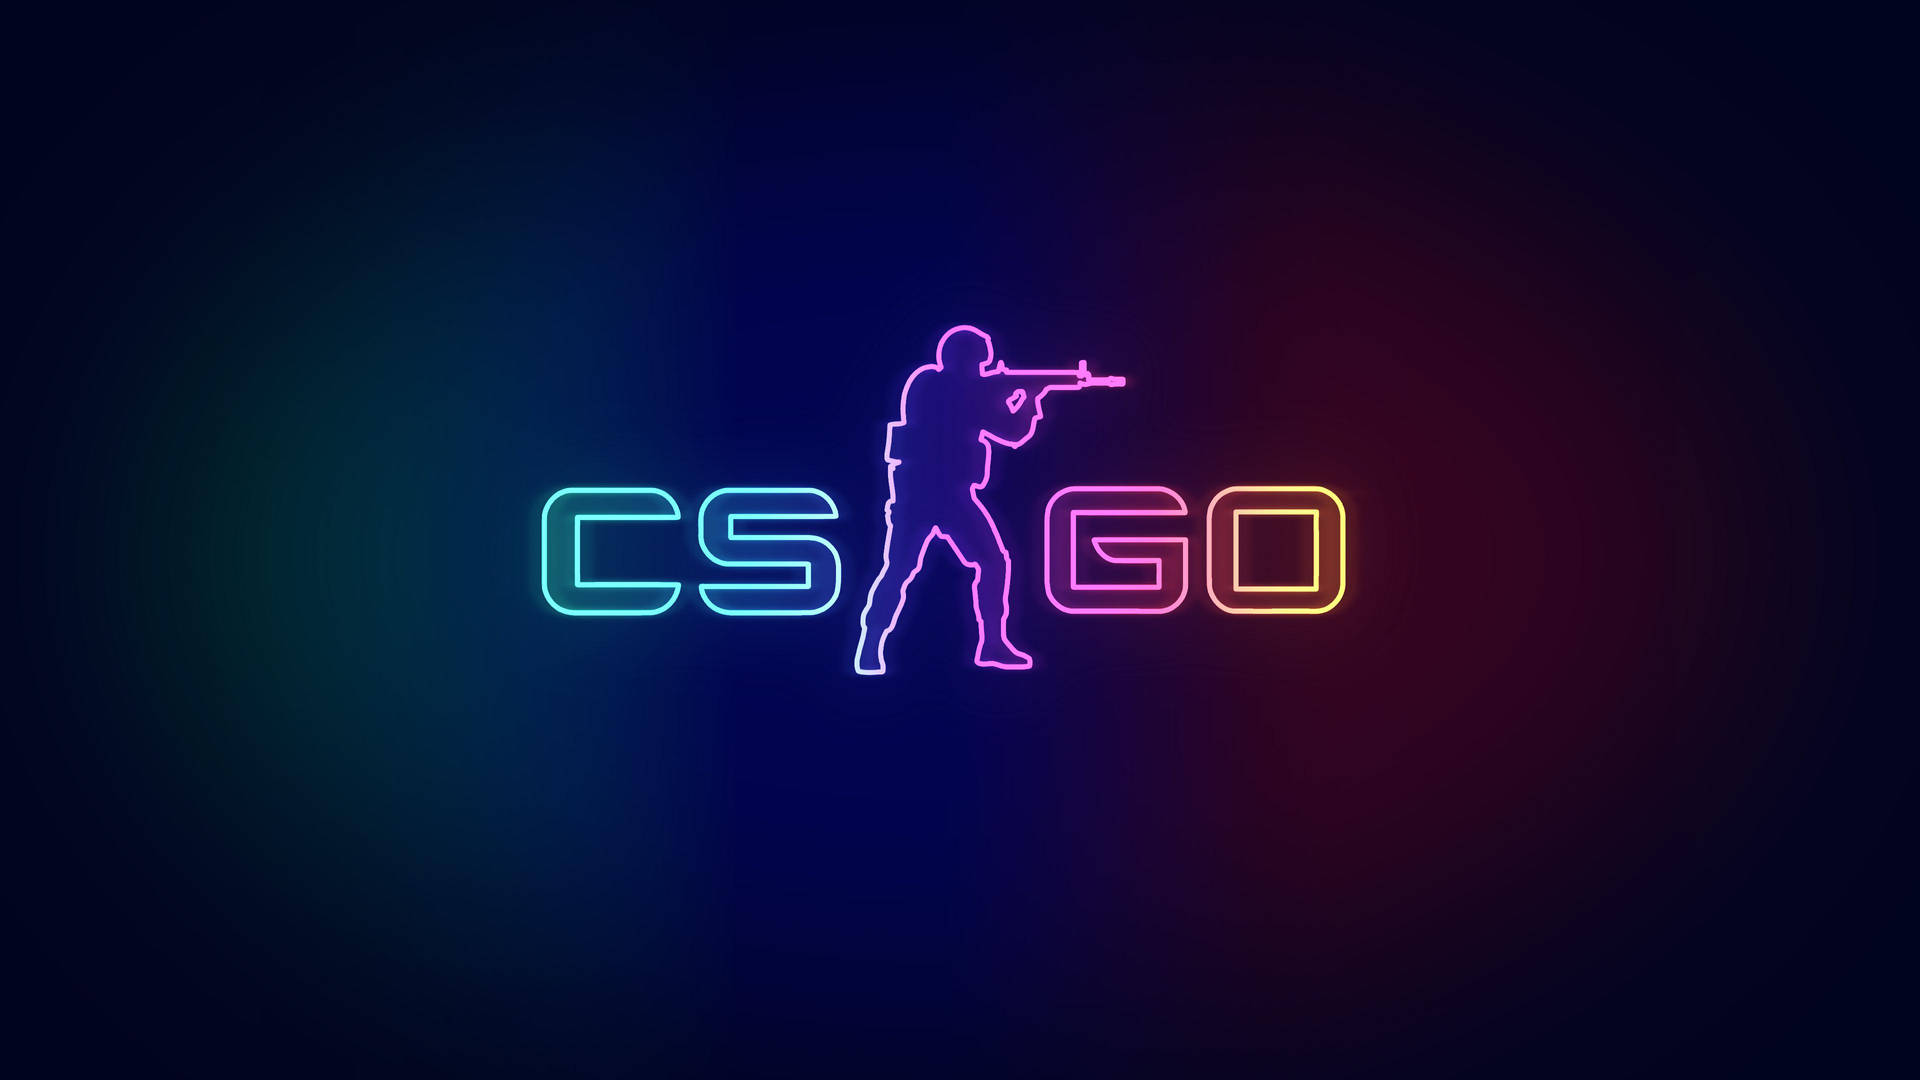 Download Cs Go Logo In Neon Wallpaper 